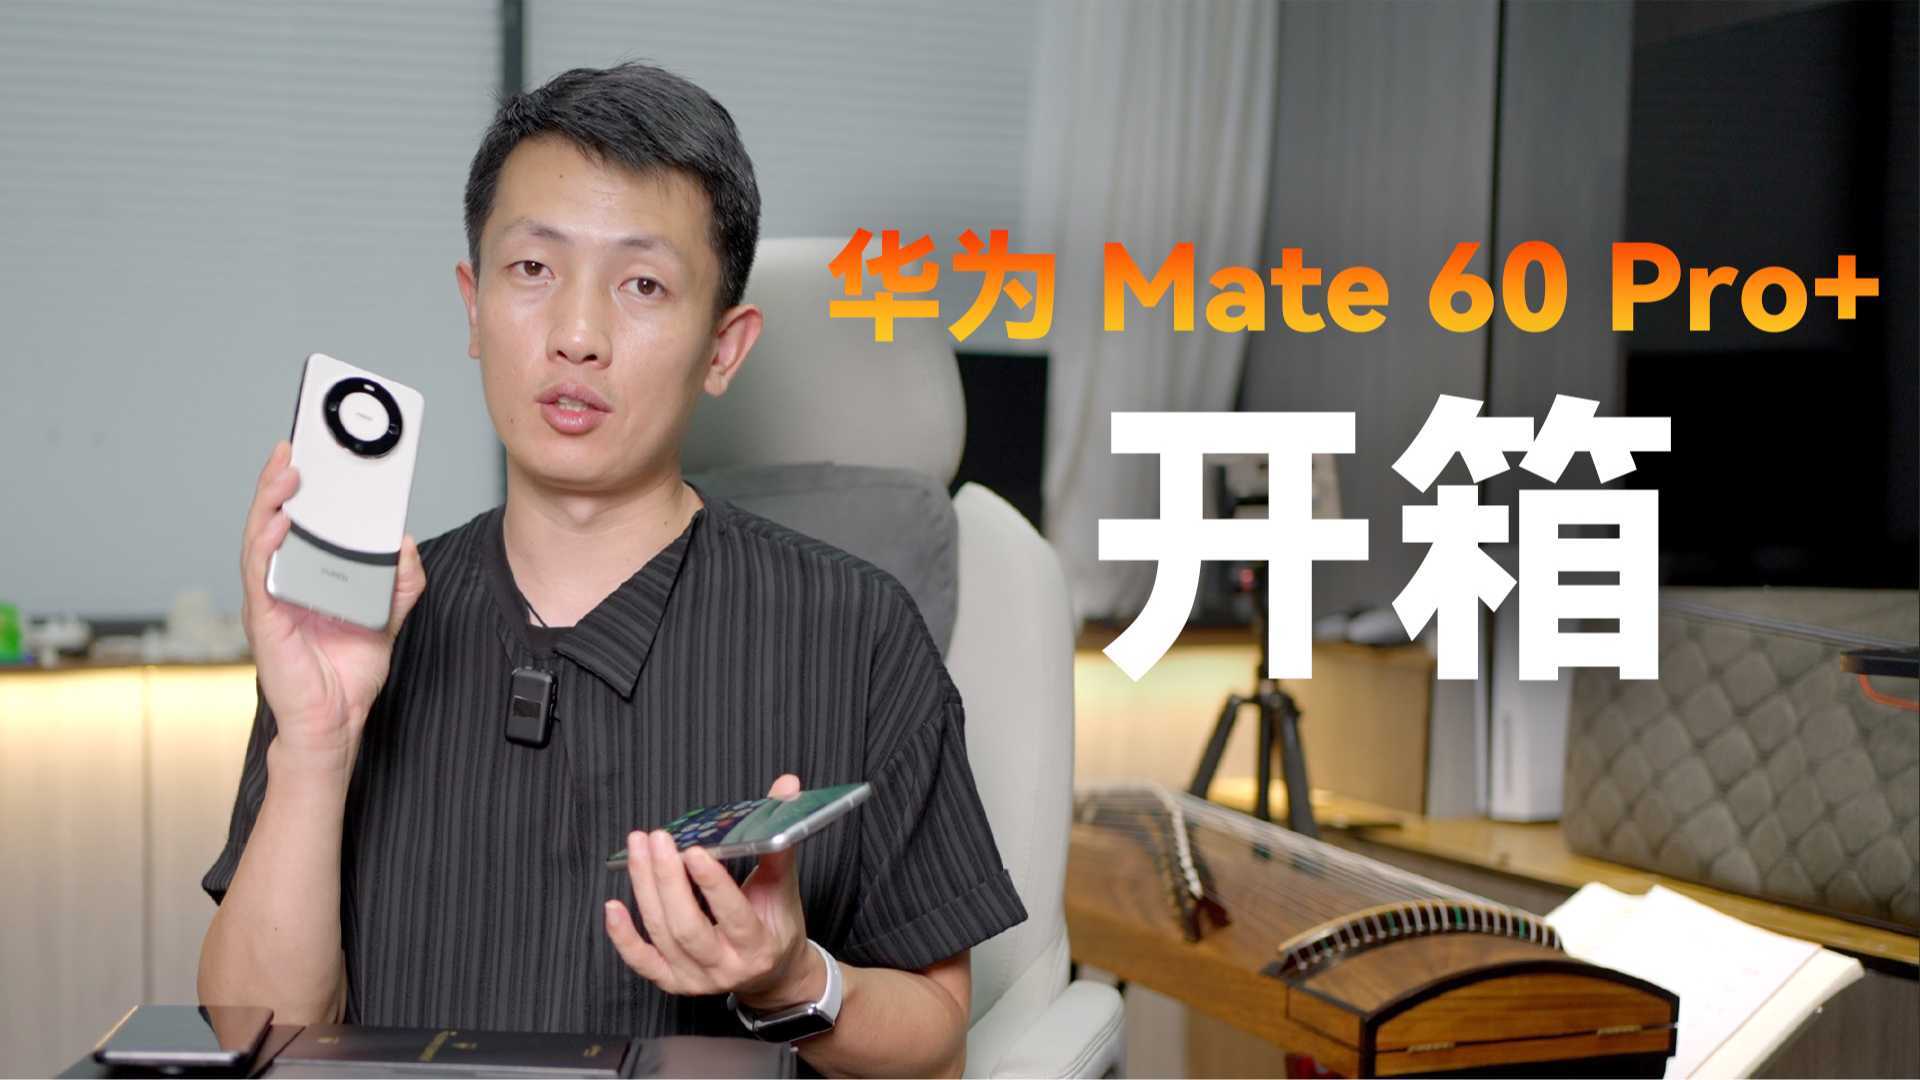 华为 Mate 60 Pro+ 首发体验